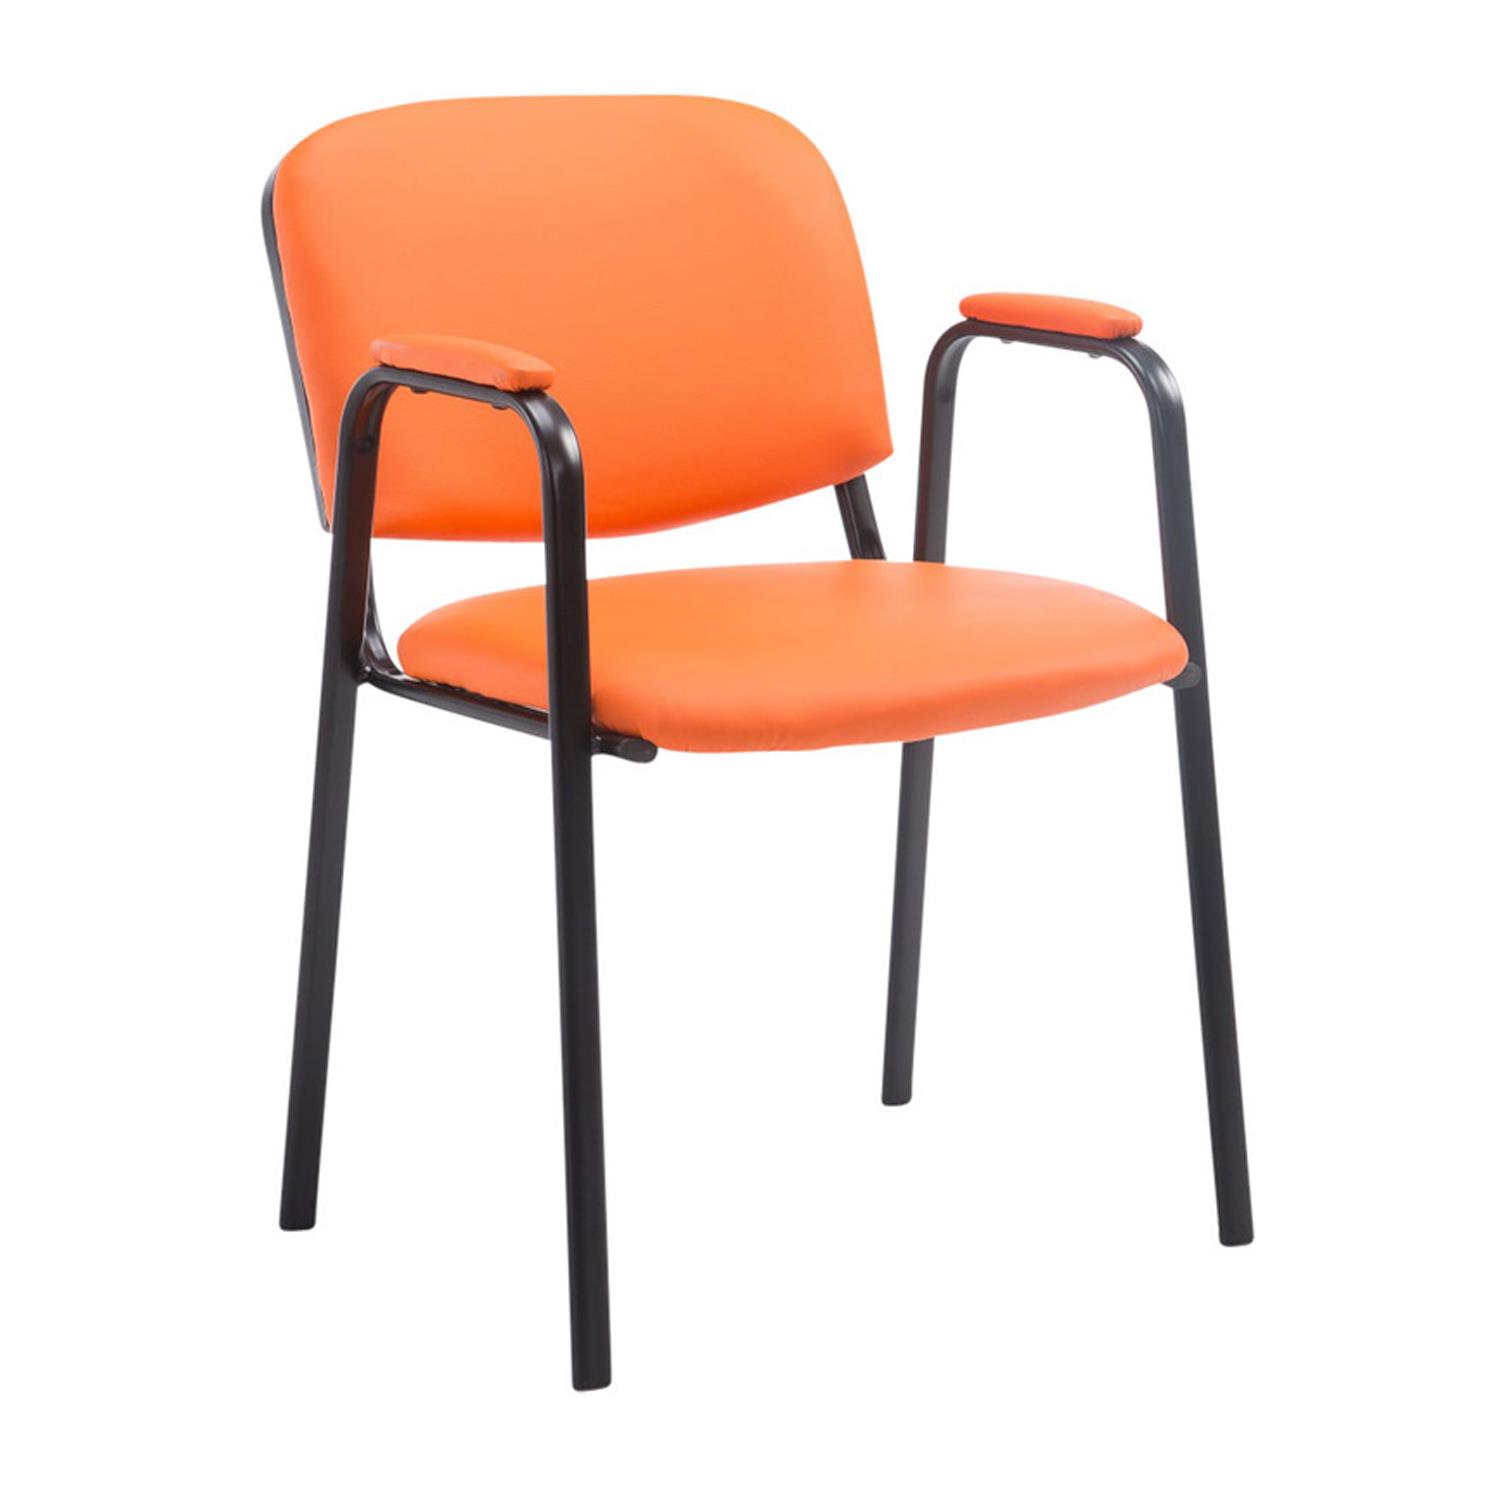 Konferenzstuhl MOBY LEDER mit Armlehnen, bequem und praktisch, schwarzes Gestell, Farbe Orange